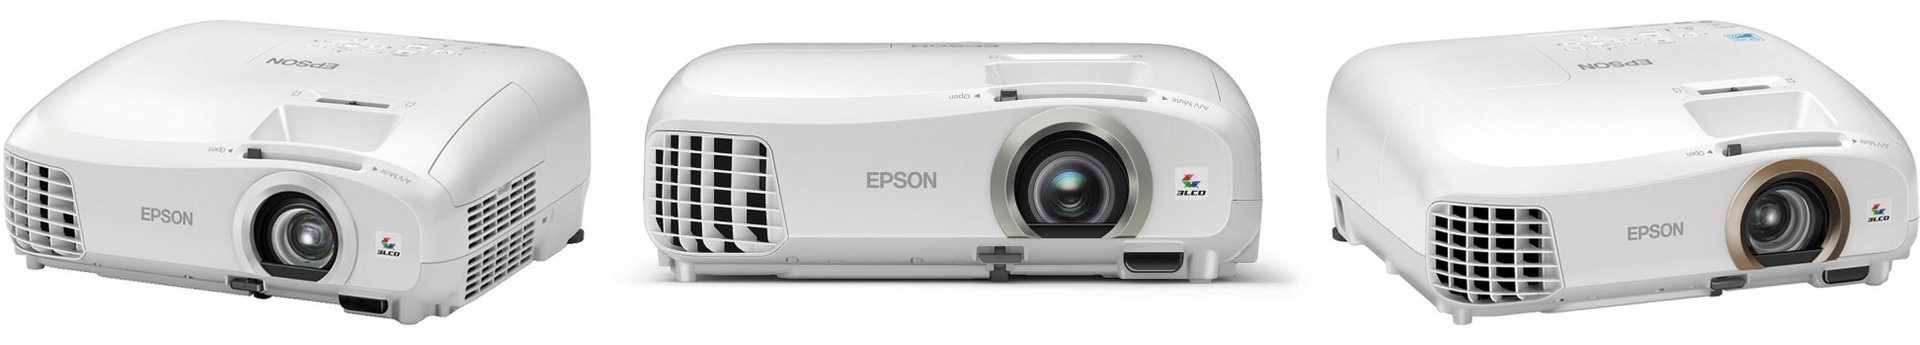 Новинки в линейке домашних проекторов Epson: встречайте Epson EH-TW6700-6800-7300-9300 и лазерный Epson LS10500 - 2